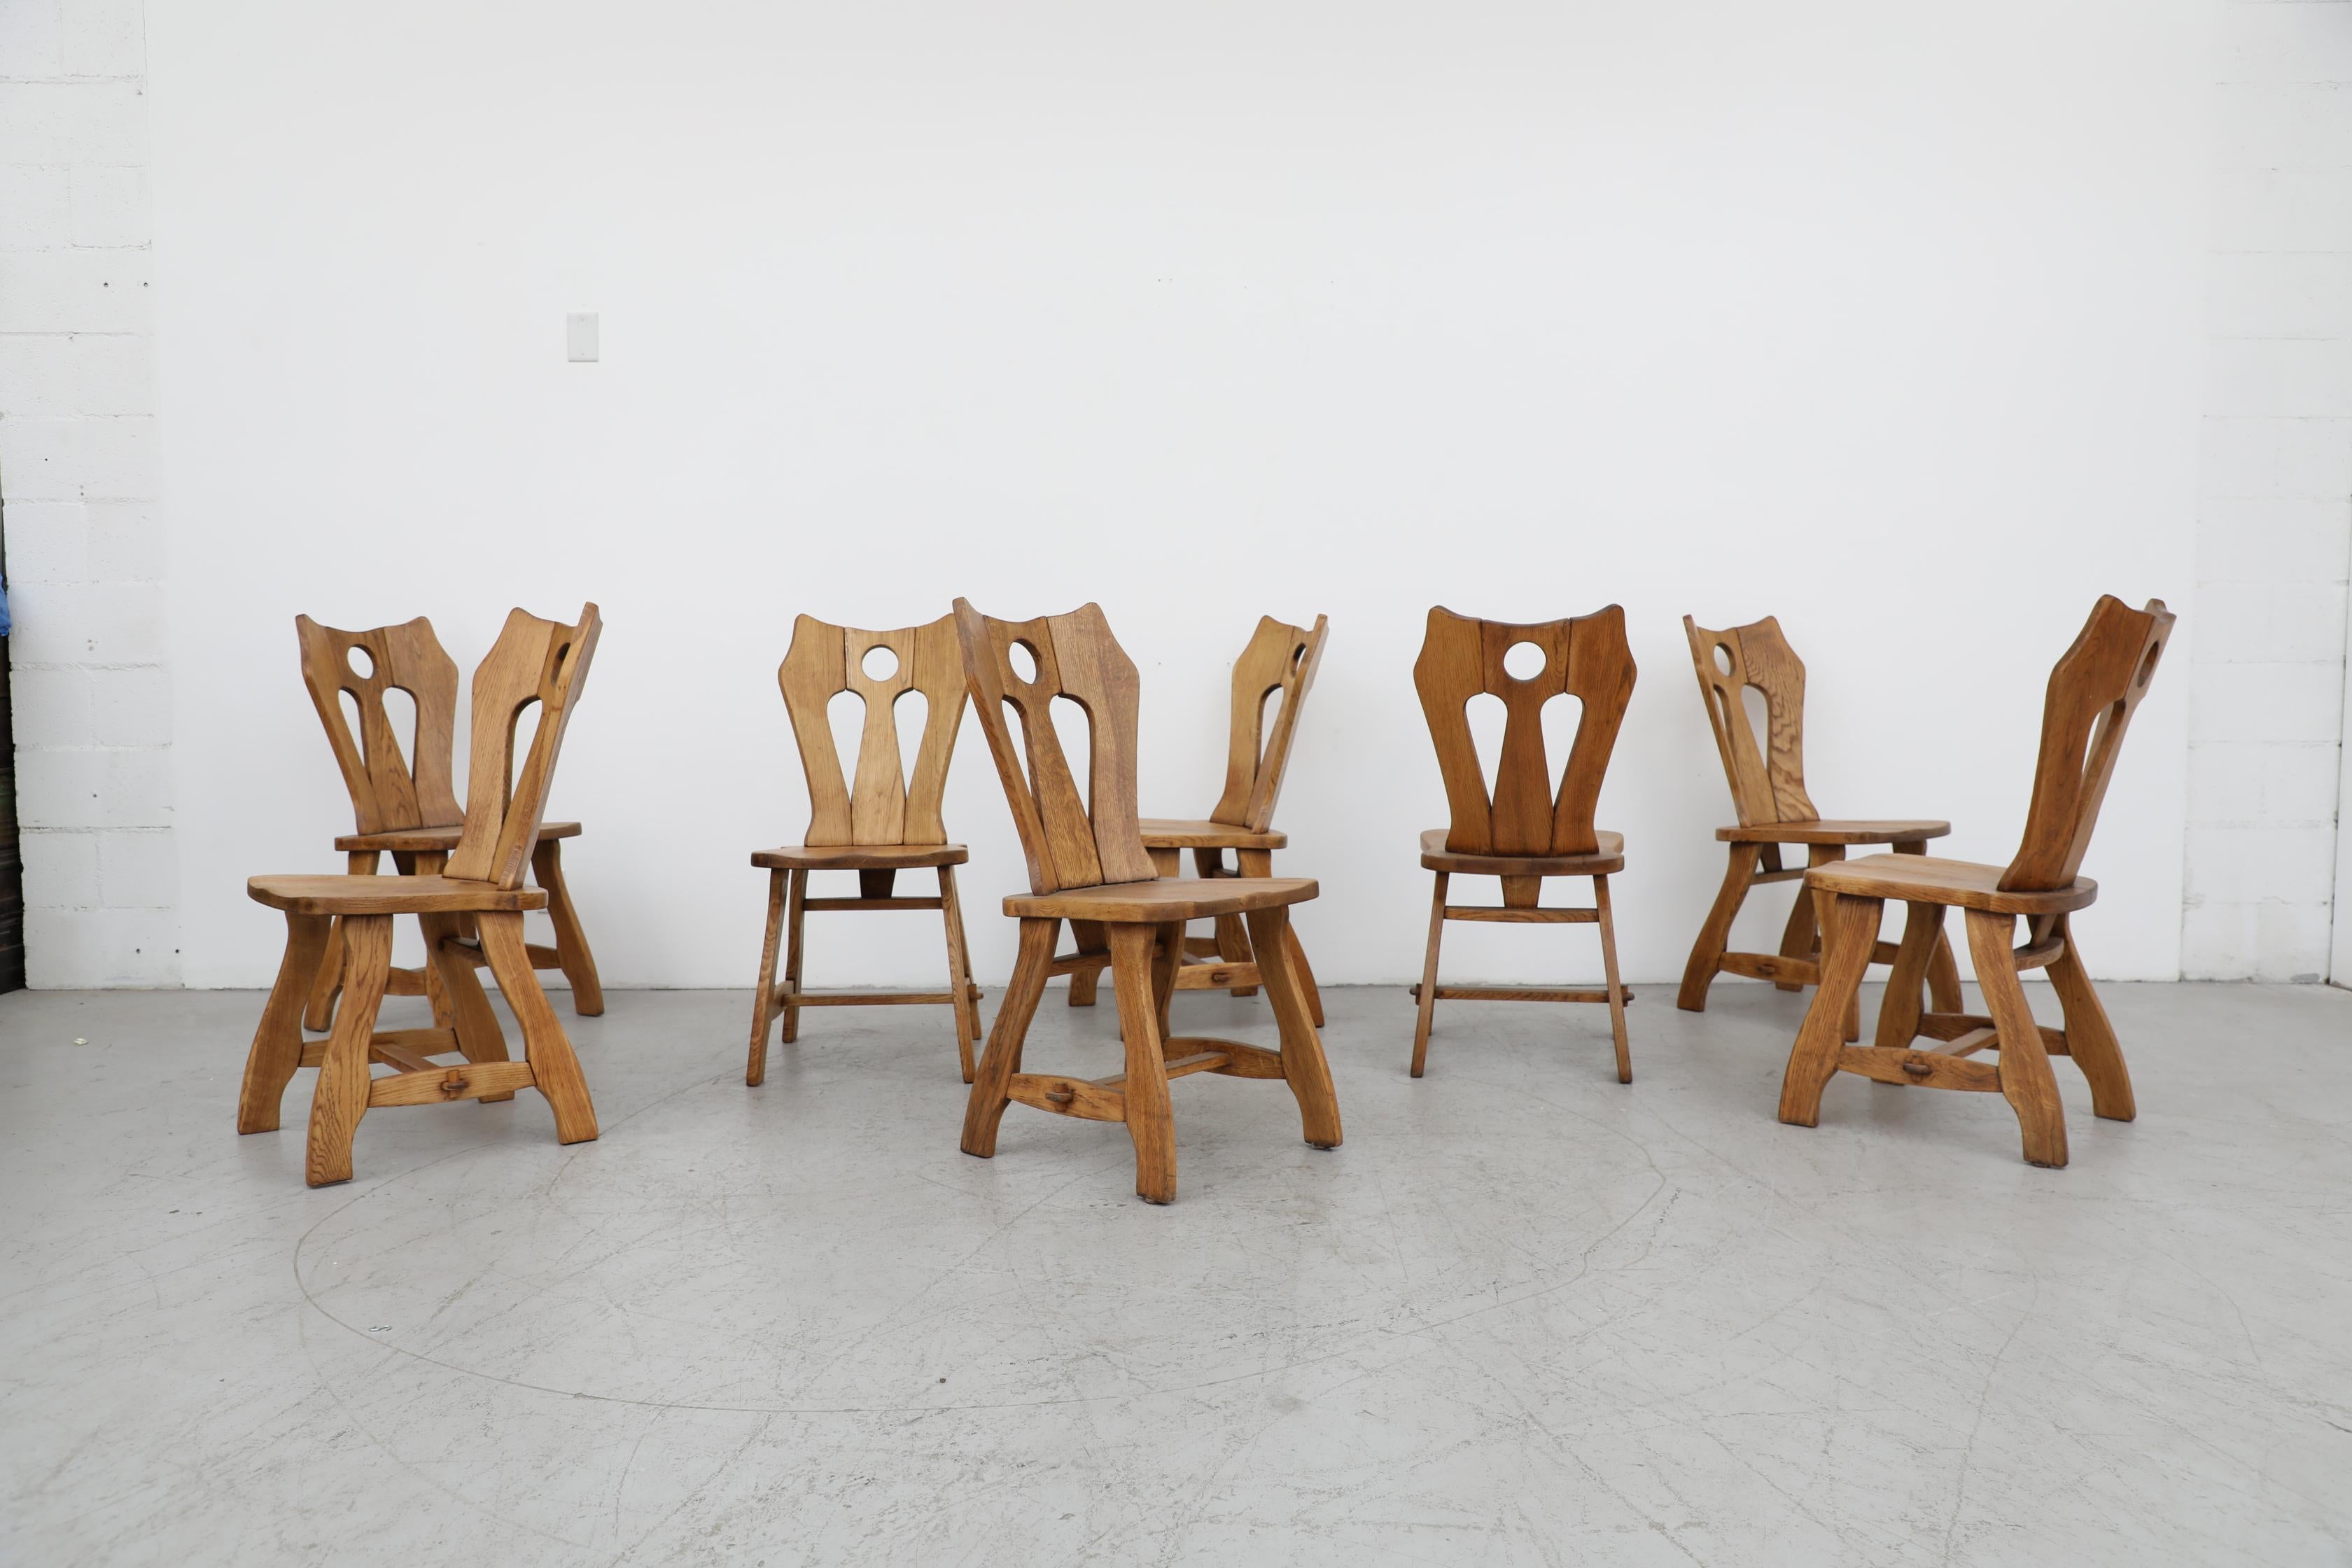 Magnifique ensemble brutaliste de 8 chaises de salle à manger De Puydt en chêne massif avec des dossiers ornementalement sculptés. Légèrement retouchée, elle est par ailleurs en état d'origine avec des usures visibles, dont quelques chevilles